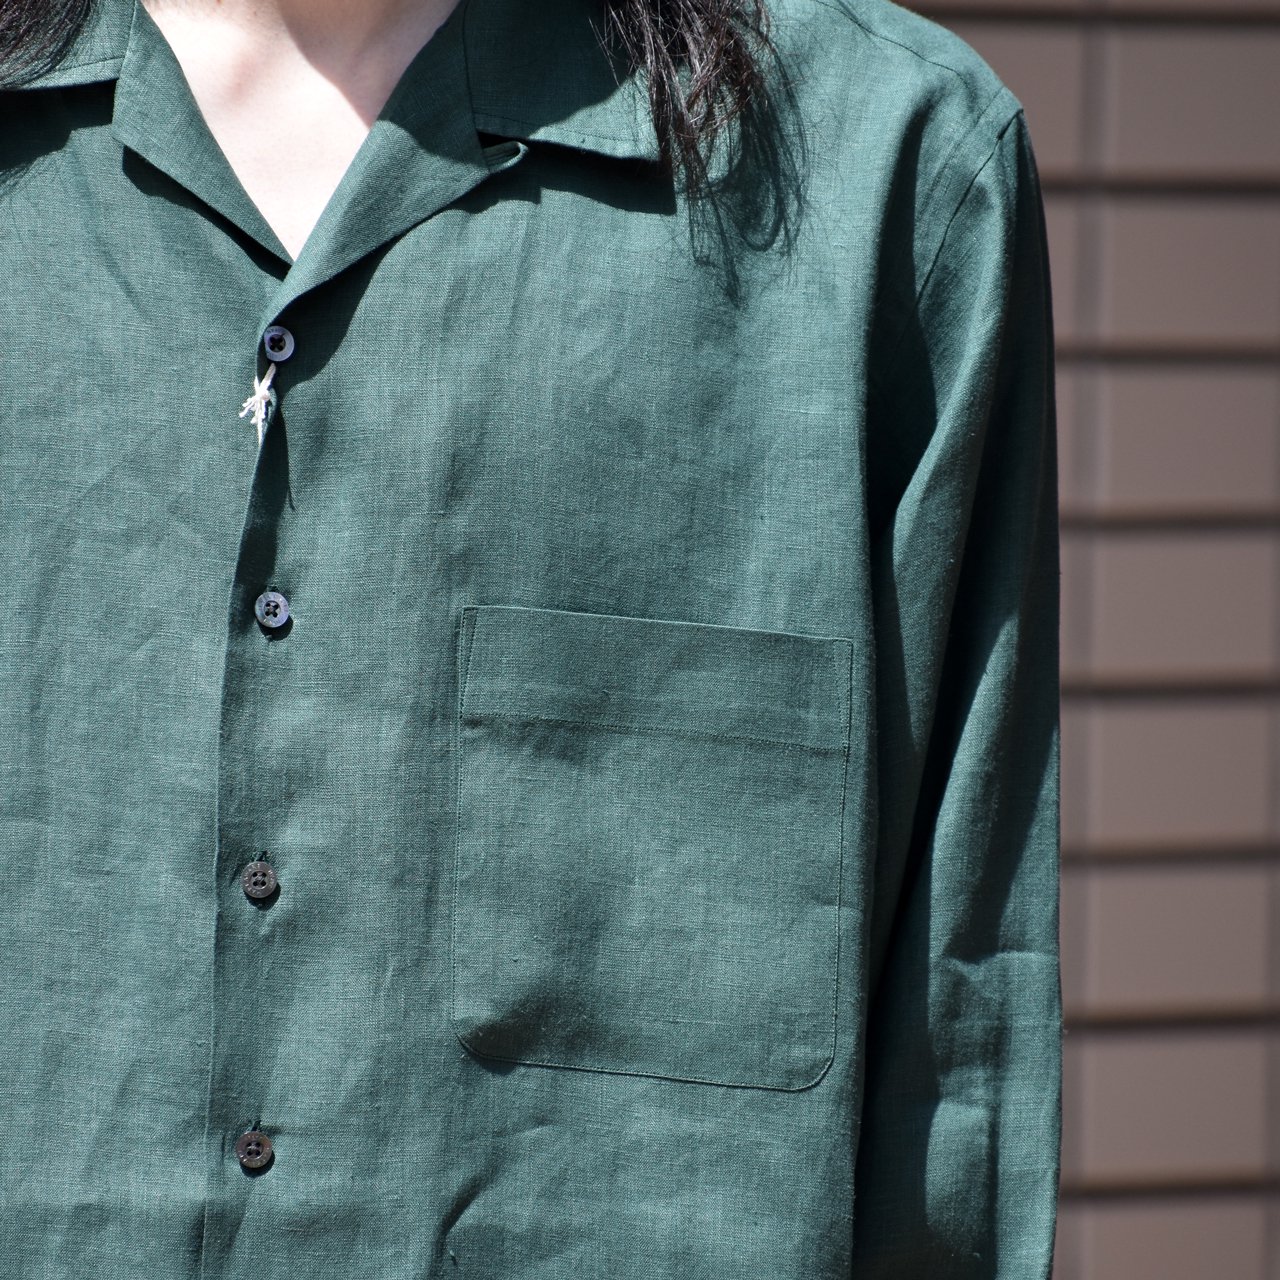 MARKAWARE (マーカウェア) 23SS/春夏 ヘンプシャツ&ヘンプパンツが発売